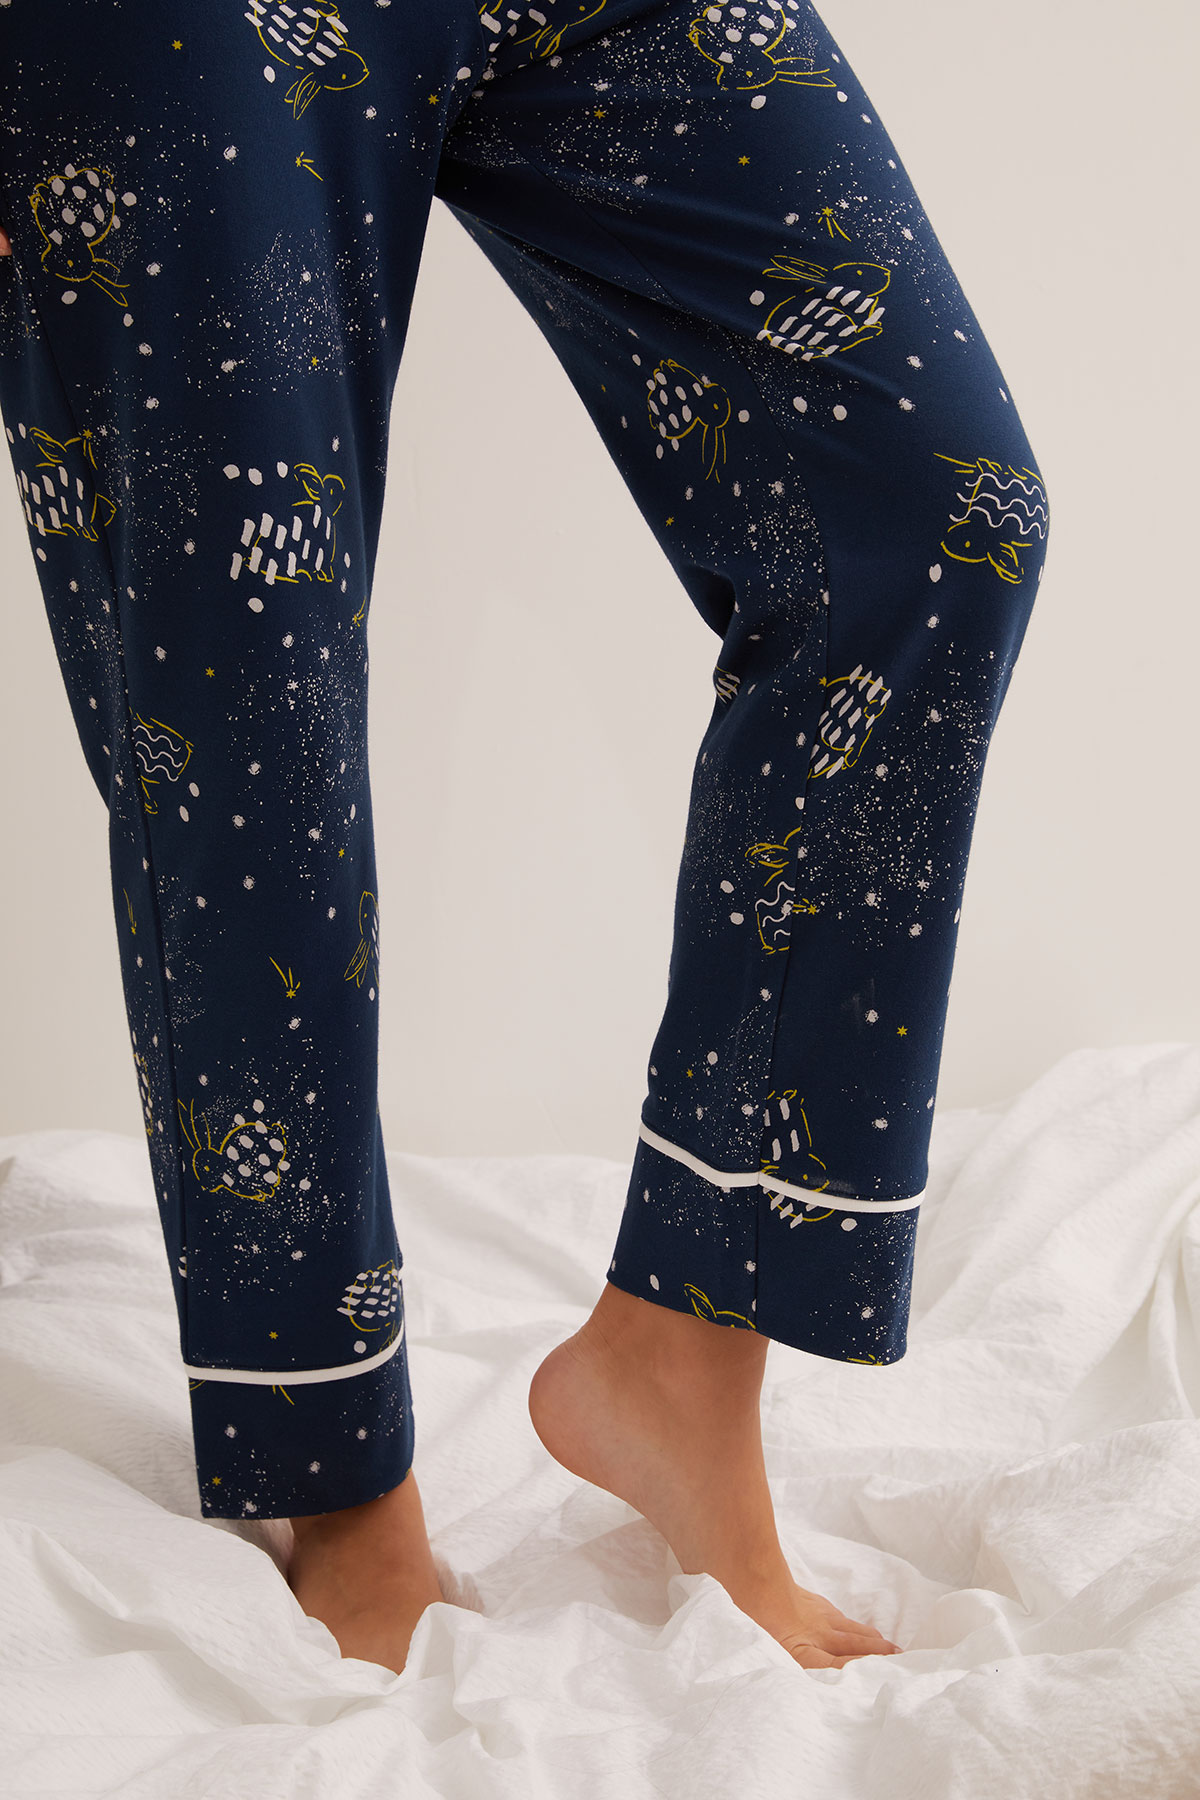 Kadın Pamuklu Kontrast Biye Detaylı Uzun Pijama Altı